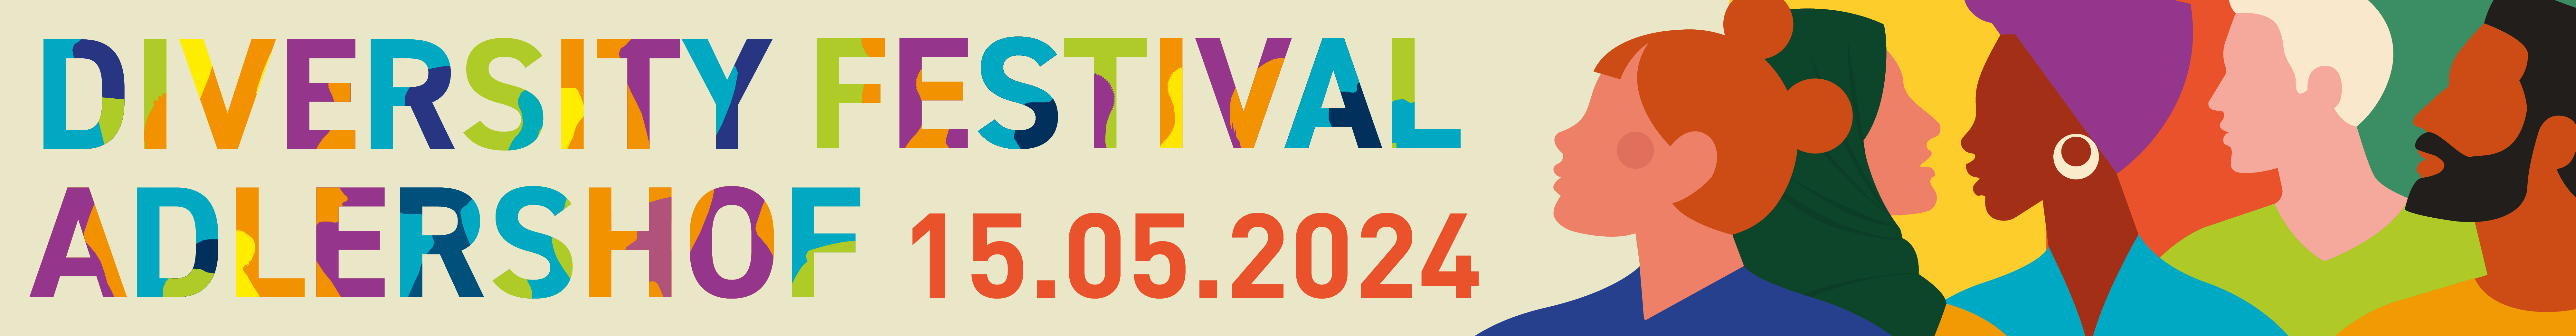 Header-Bild für Diversity Festival Adlershof